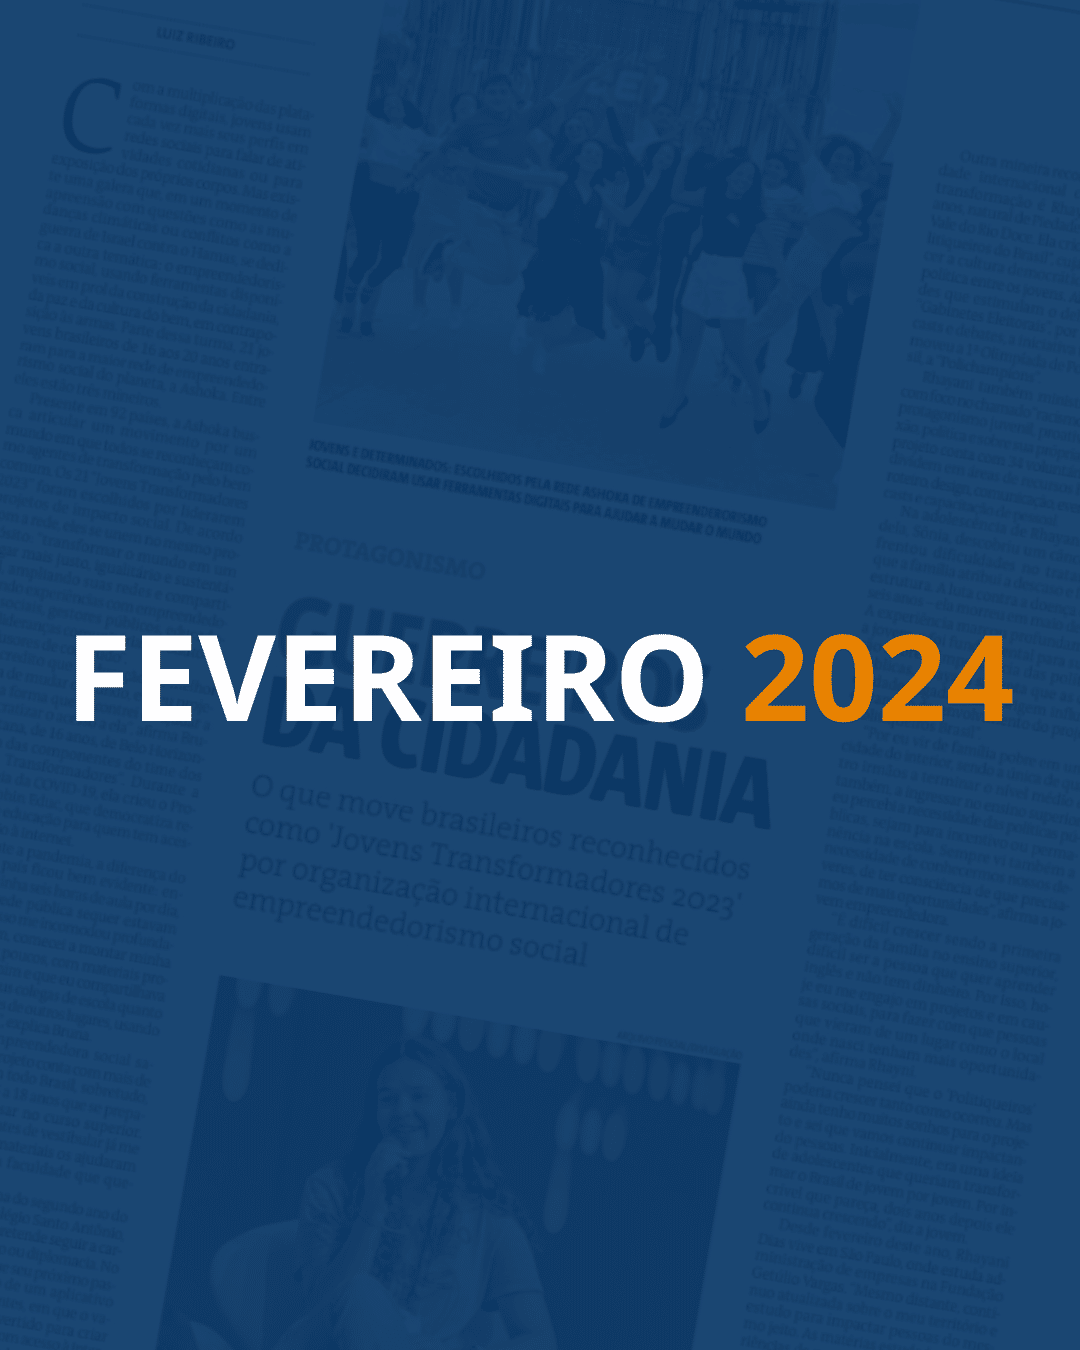 Em destaque, lê-se "FEVEREIRO" em branco e "2024" em laranja. Fundo com uma página de jornal e um filtro azul escuro por cima.